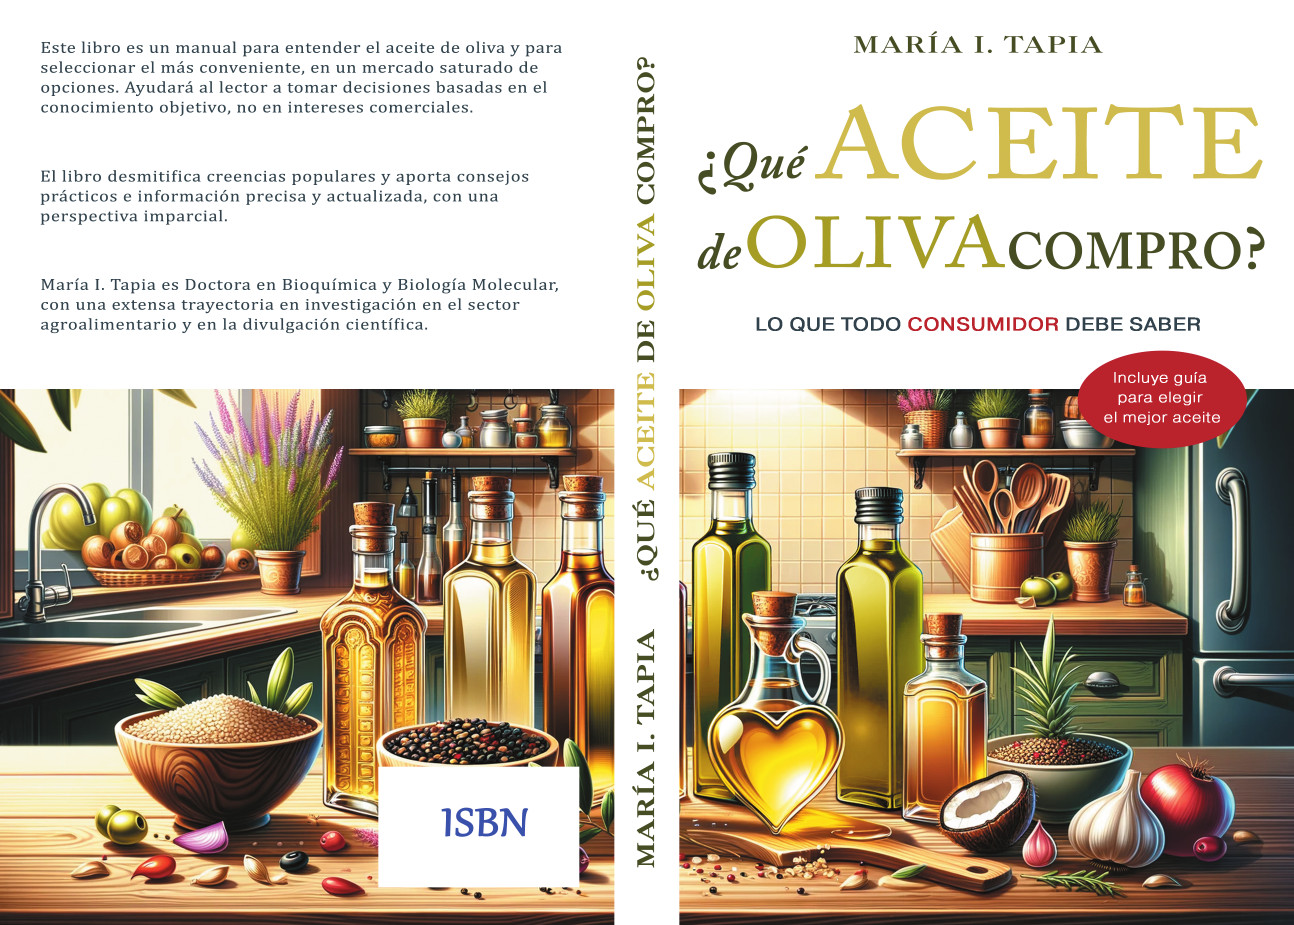 ¿Qué aceite de oliva compro?